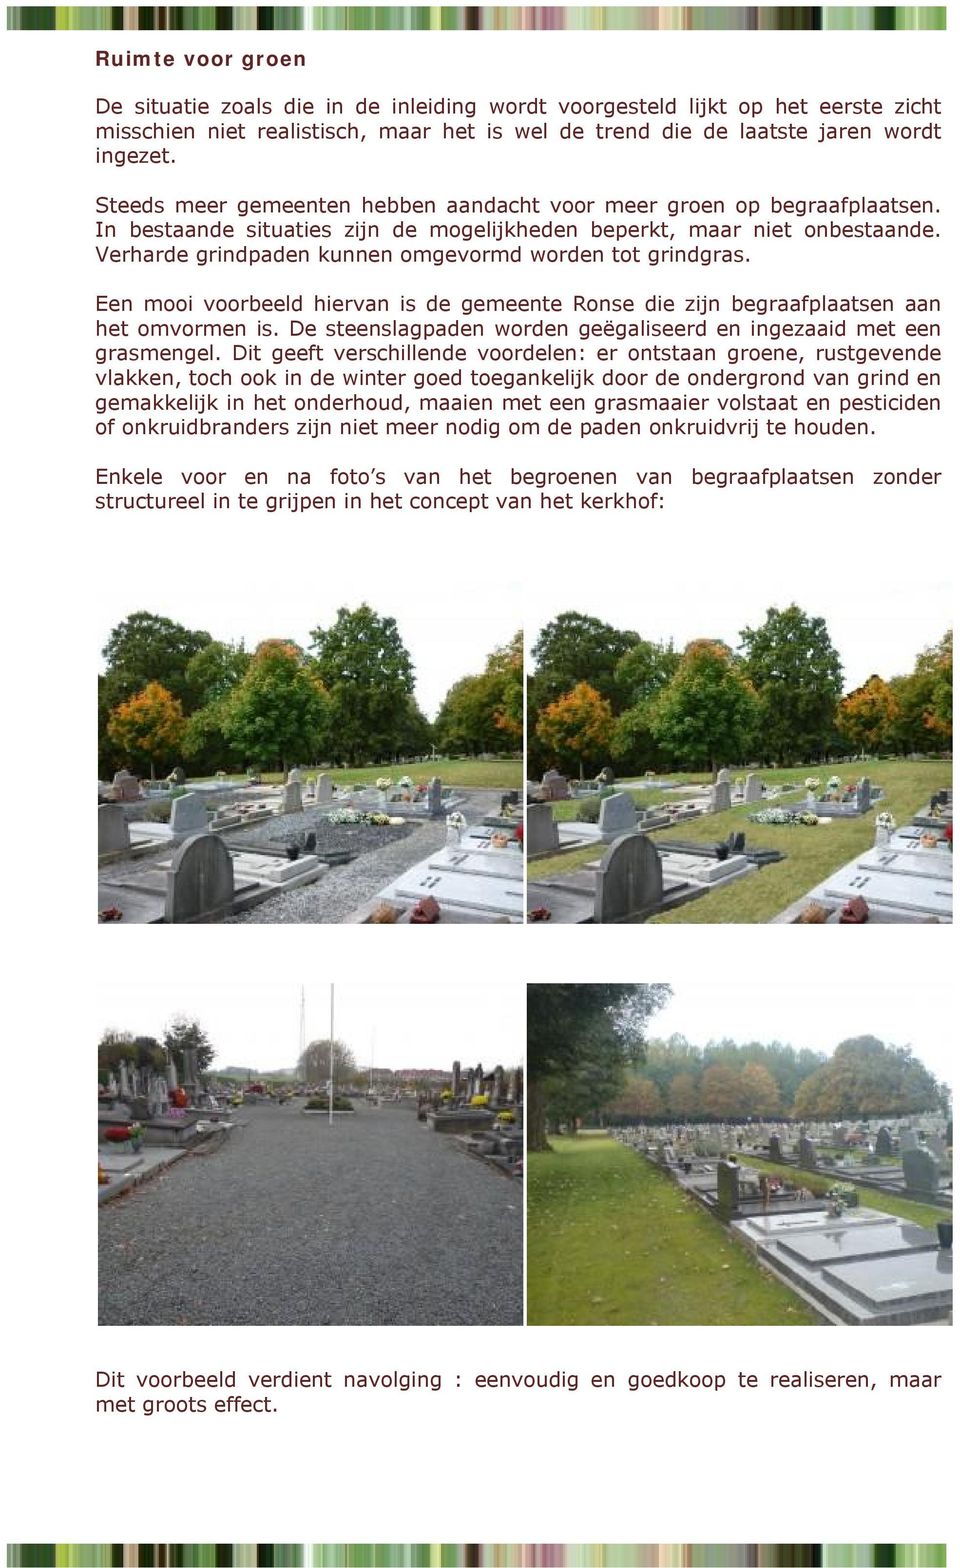 Verharde grindpaden kunnen omgevormd worden tot grindgras. Een mooi voorbeeld hiervan is de gemeente Ronse die zijn begraafplaatsen aan het omvormen is.